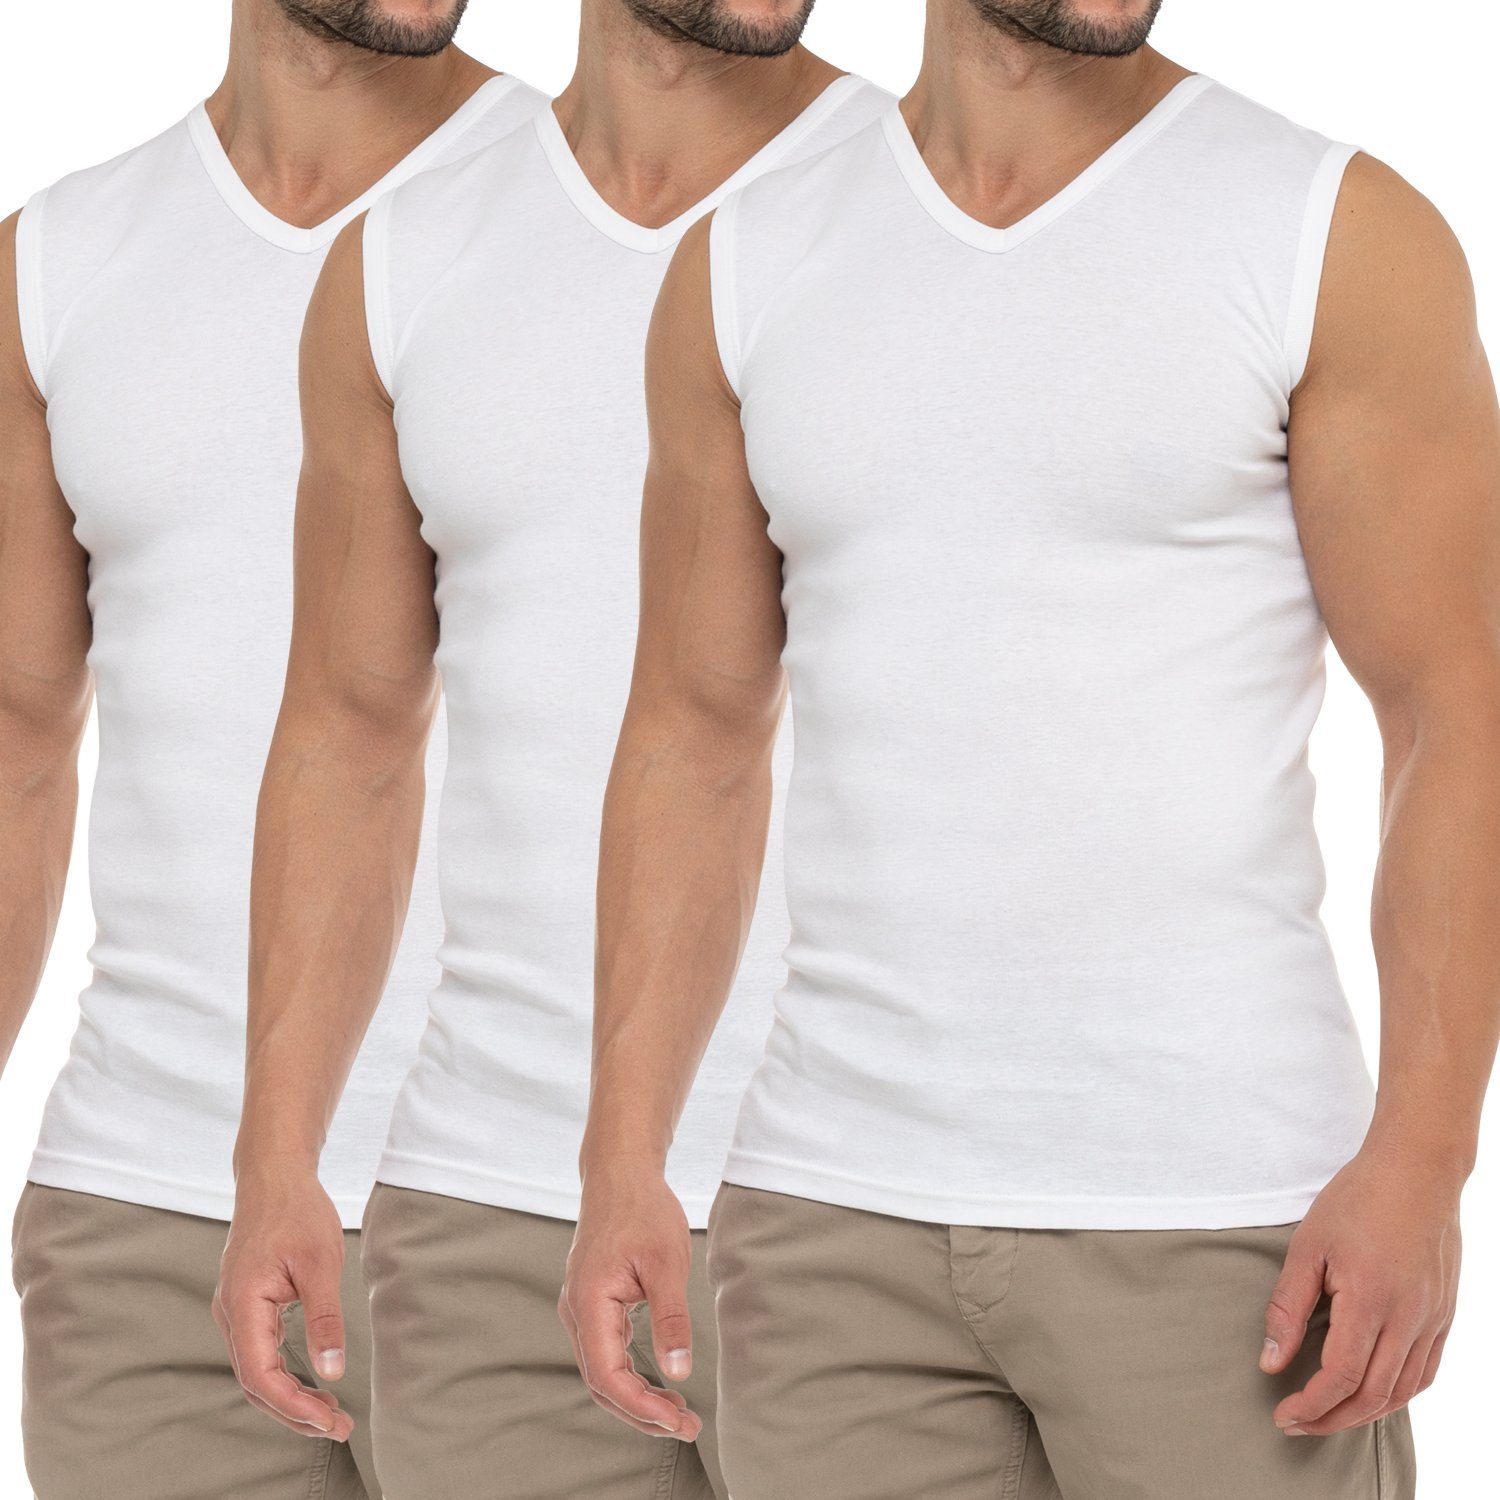 celodoro Unterhemd Herren Business Muskelshirt V-Neck (3er Pack) Muscle Shirt Weiss